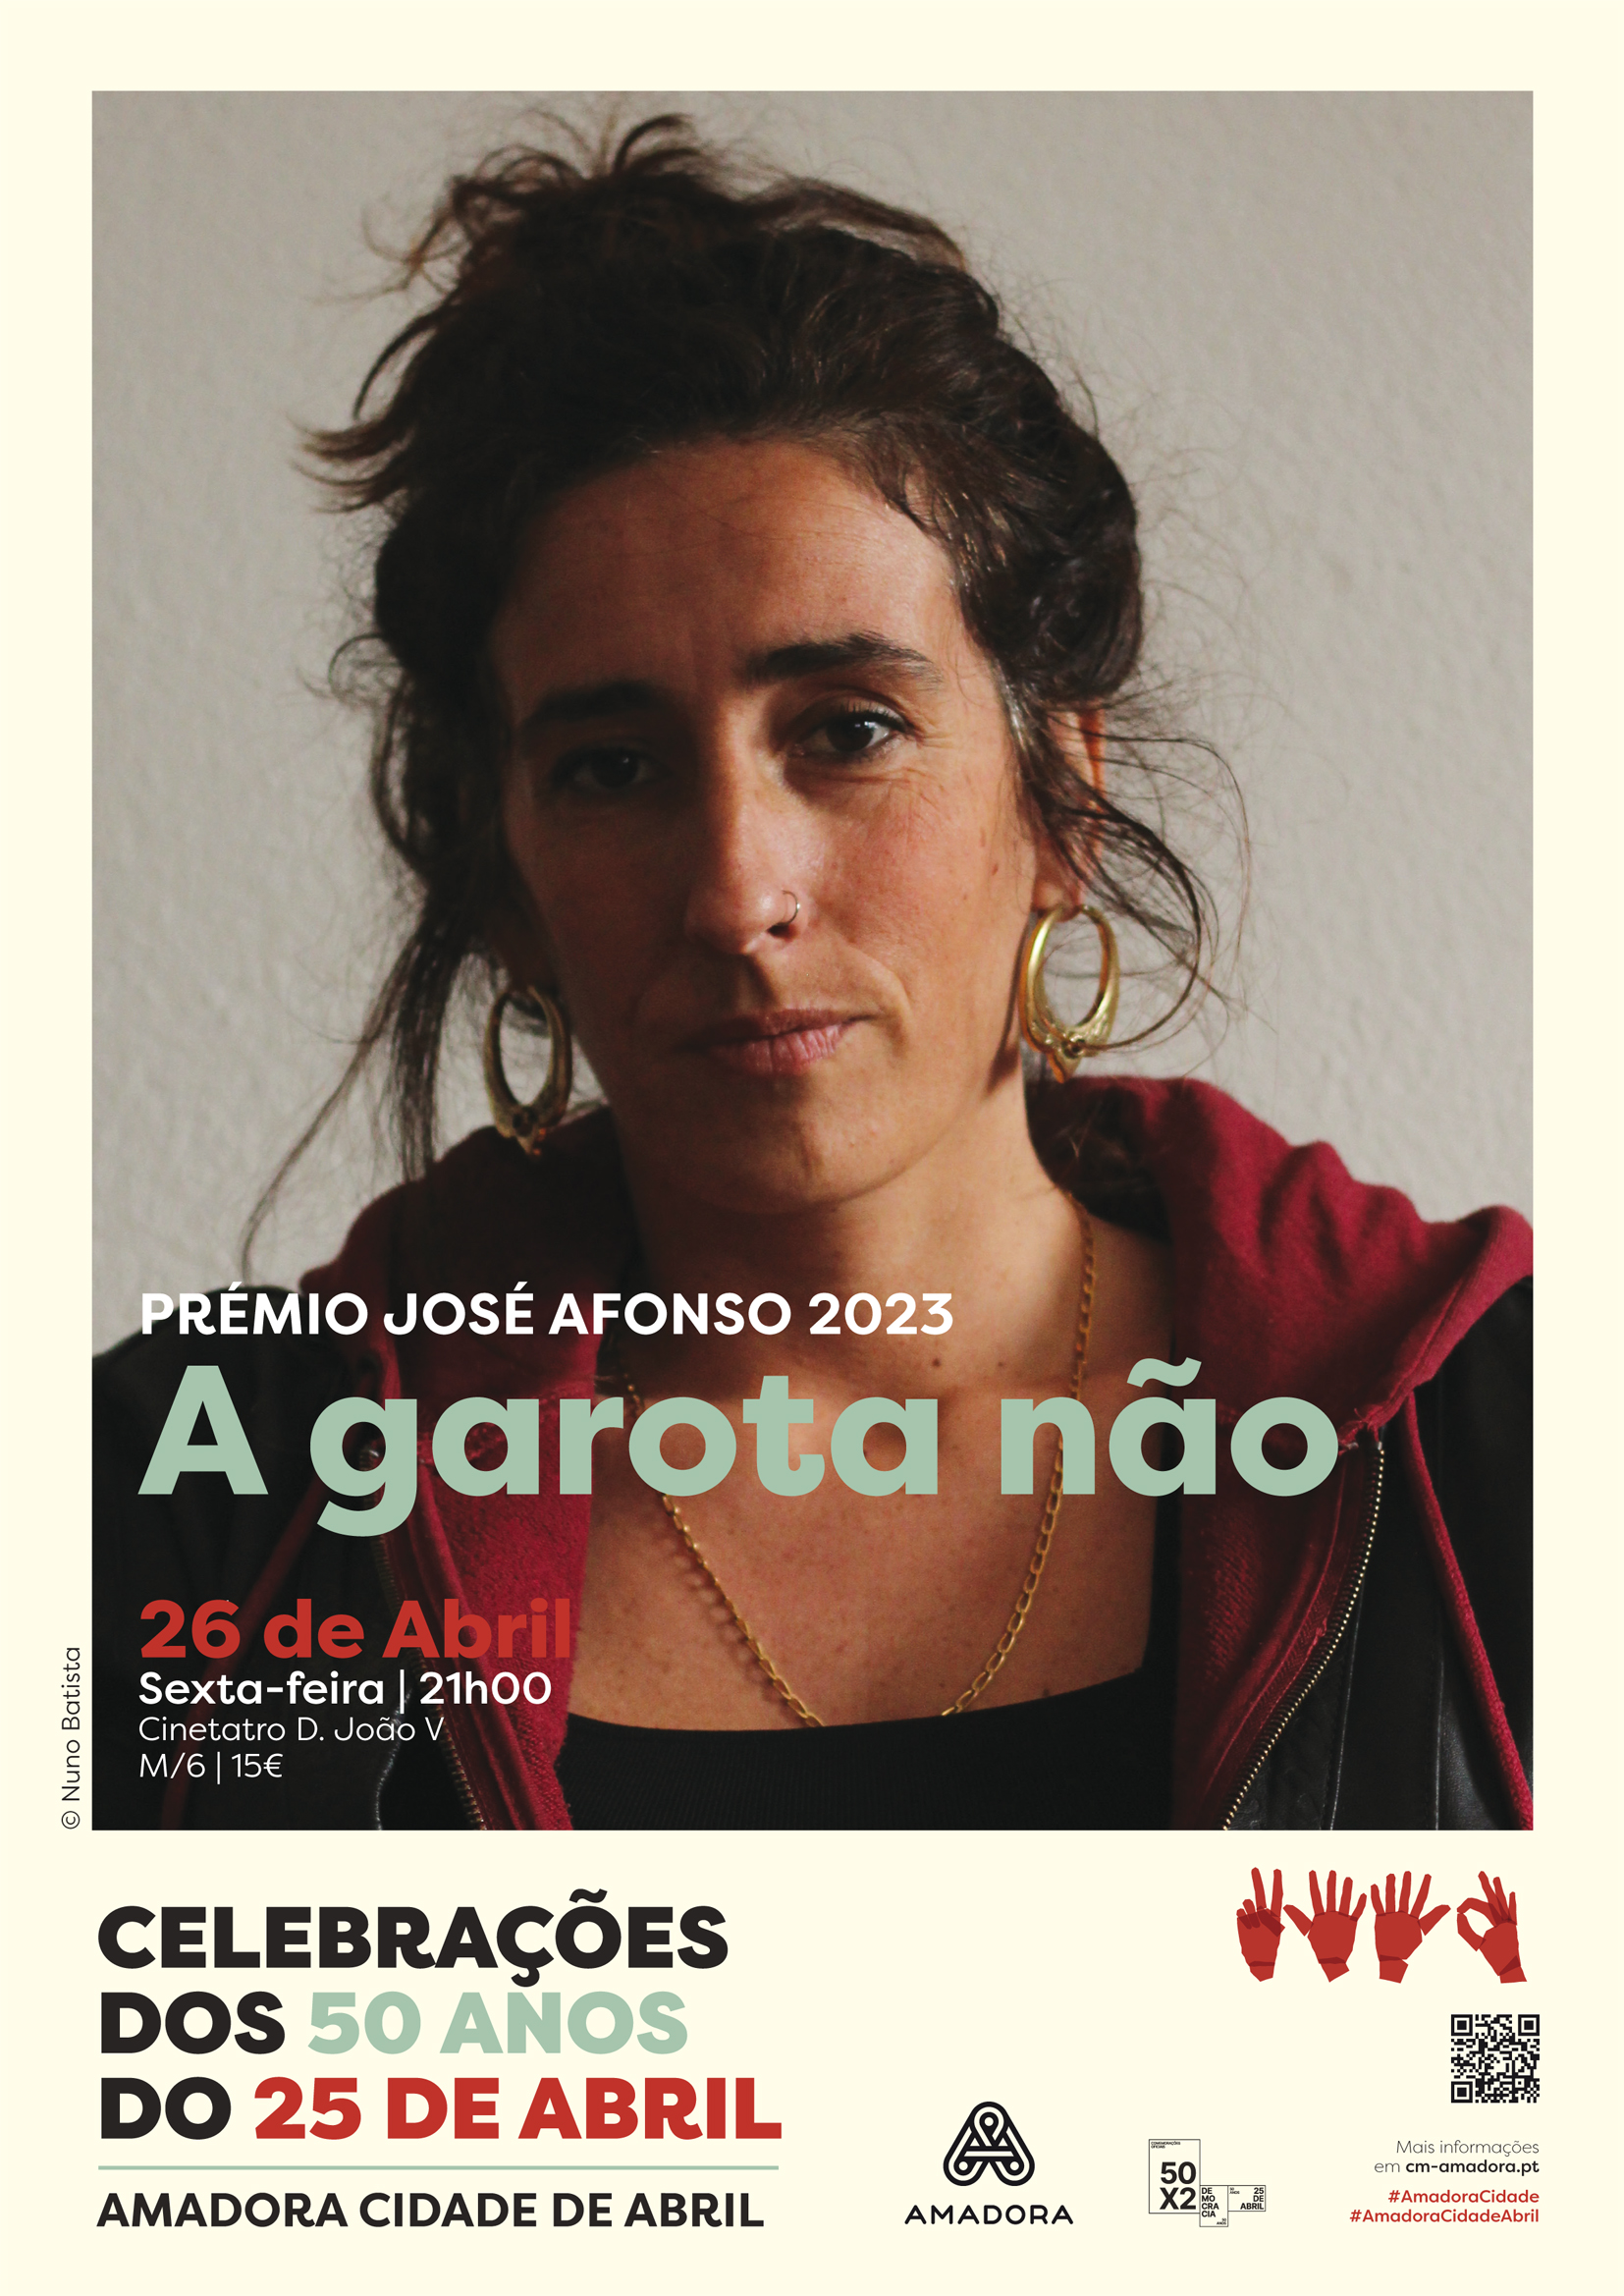 Capa Oficial do Evento Prémio José Afonso 2023